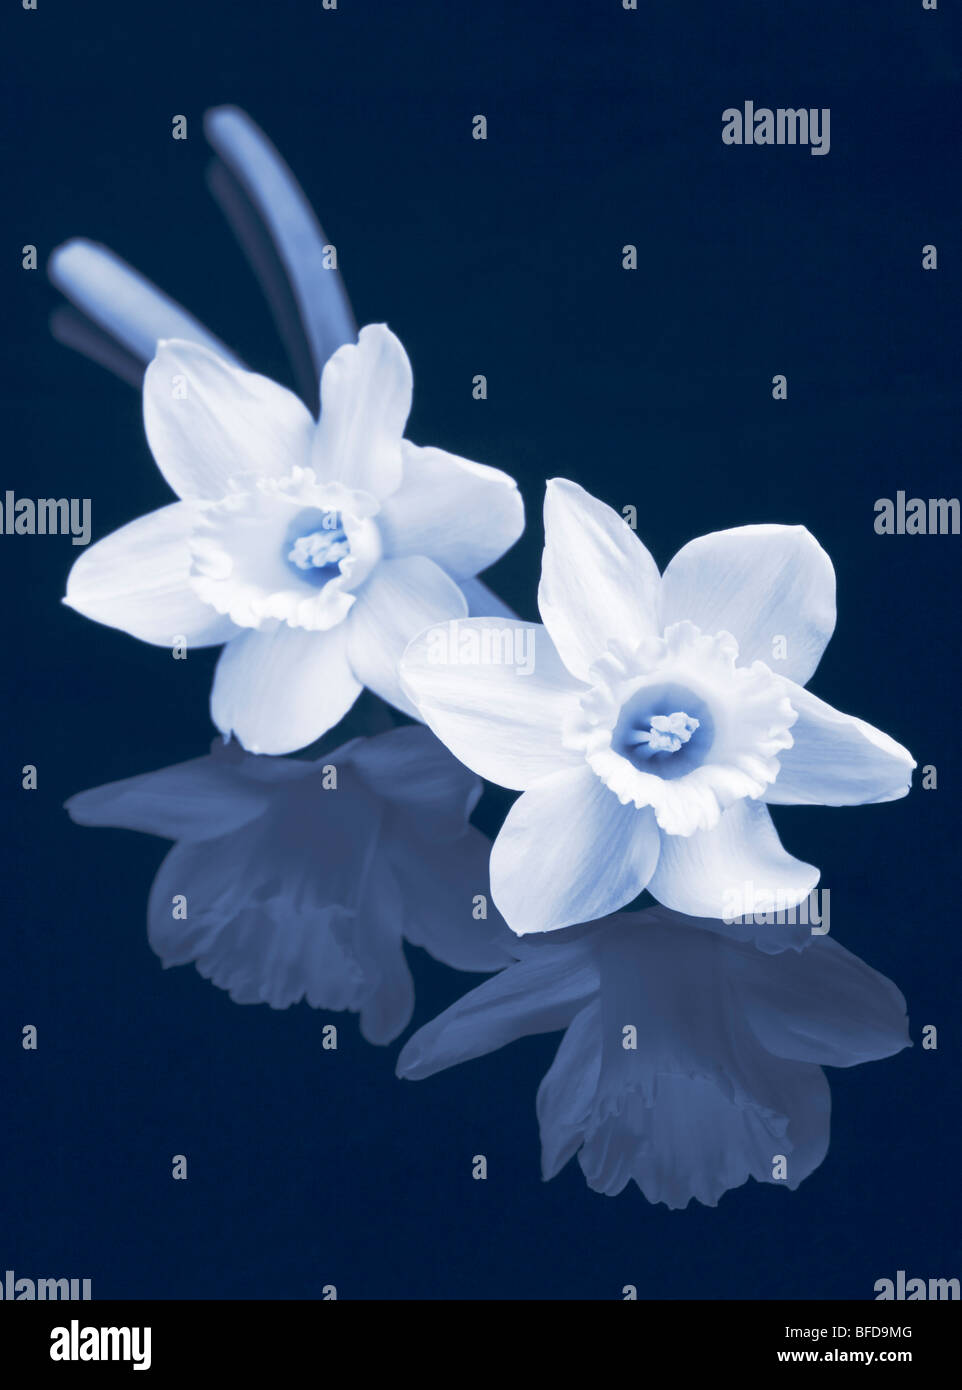 Dos Narcisos en tonos azul en blanco y negro Foto de stock